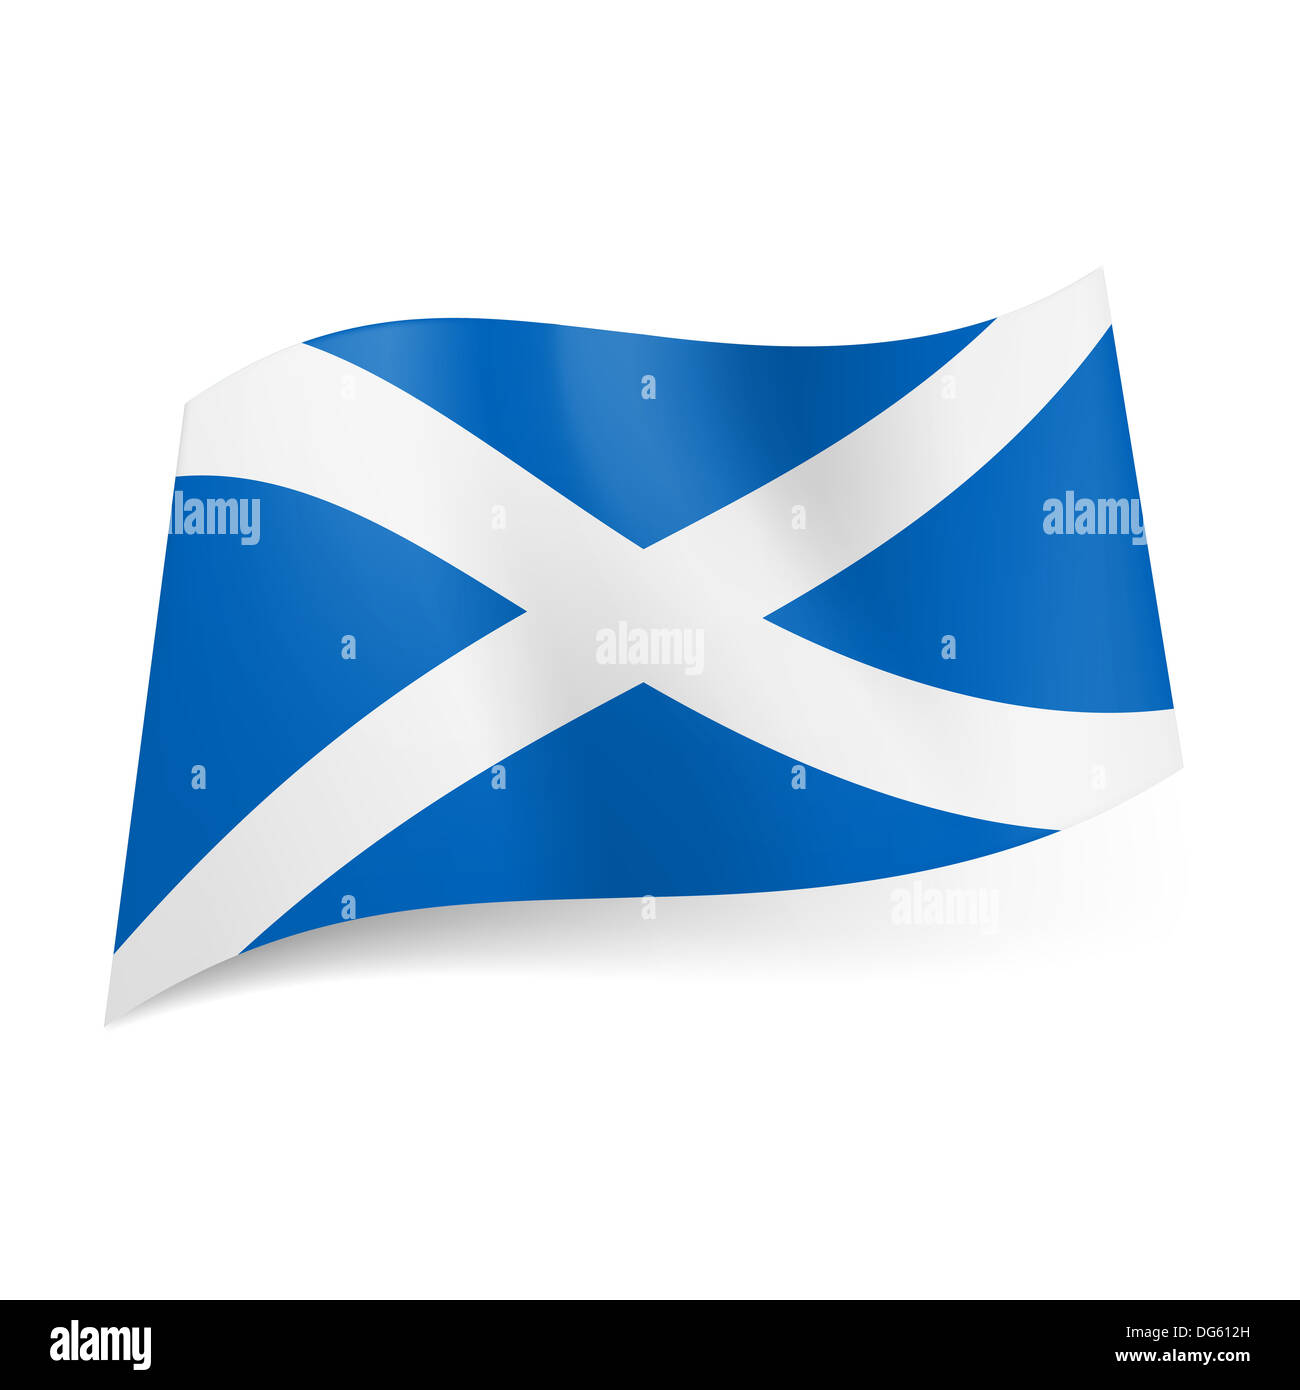 Cờ quốc gia của Scotland có 1-0-2-0 nét đặc trưng tạo nên vẻ đẹp tuyệt đẹp và sự kiêu sa. Hãy xem hình ảnh liên quan để cảm nhận tình yêu với Scotland và tìm hiểu lịch sử phong phú của đất nước này.